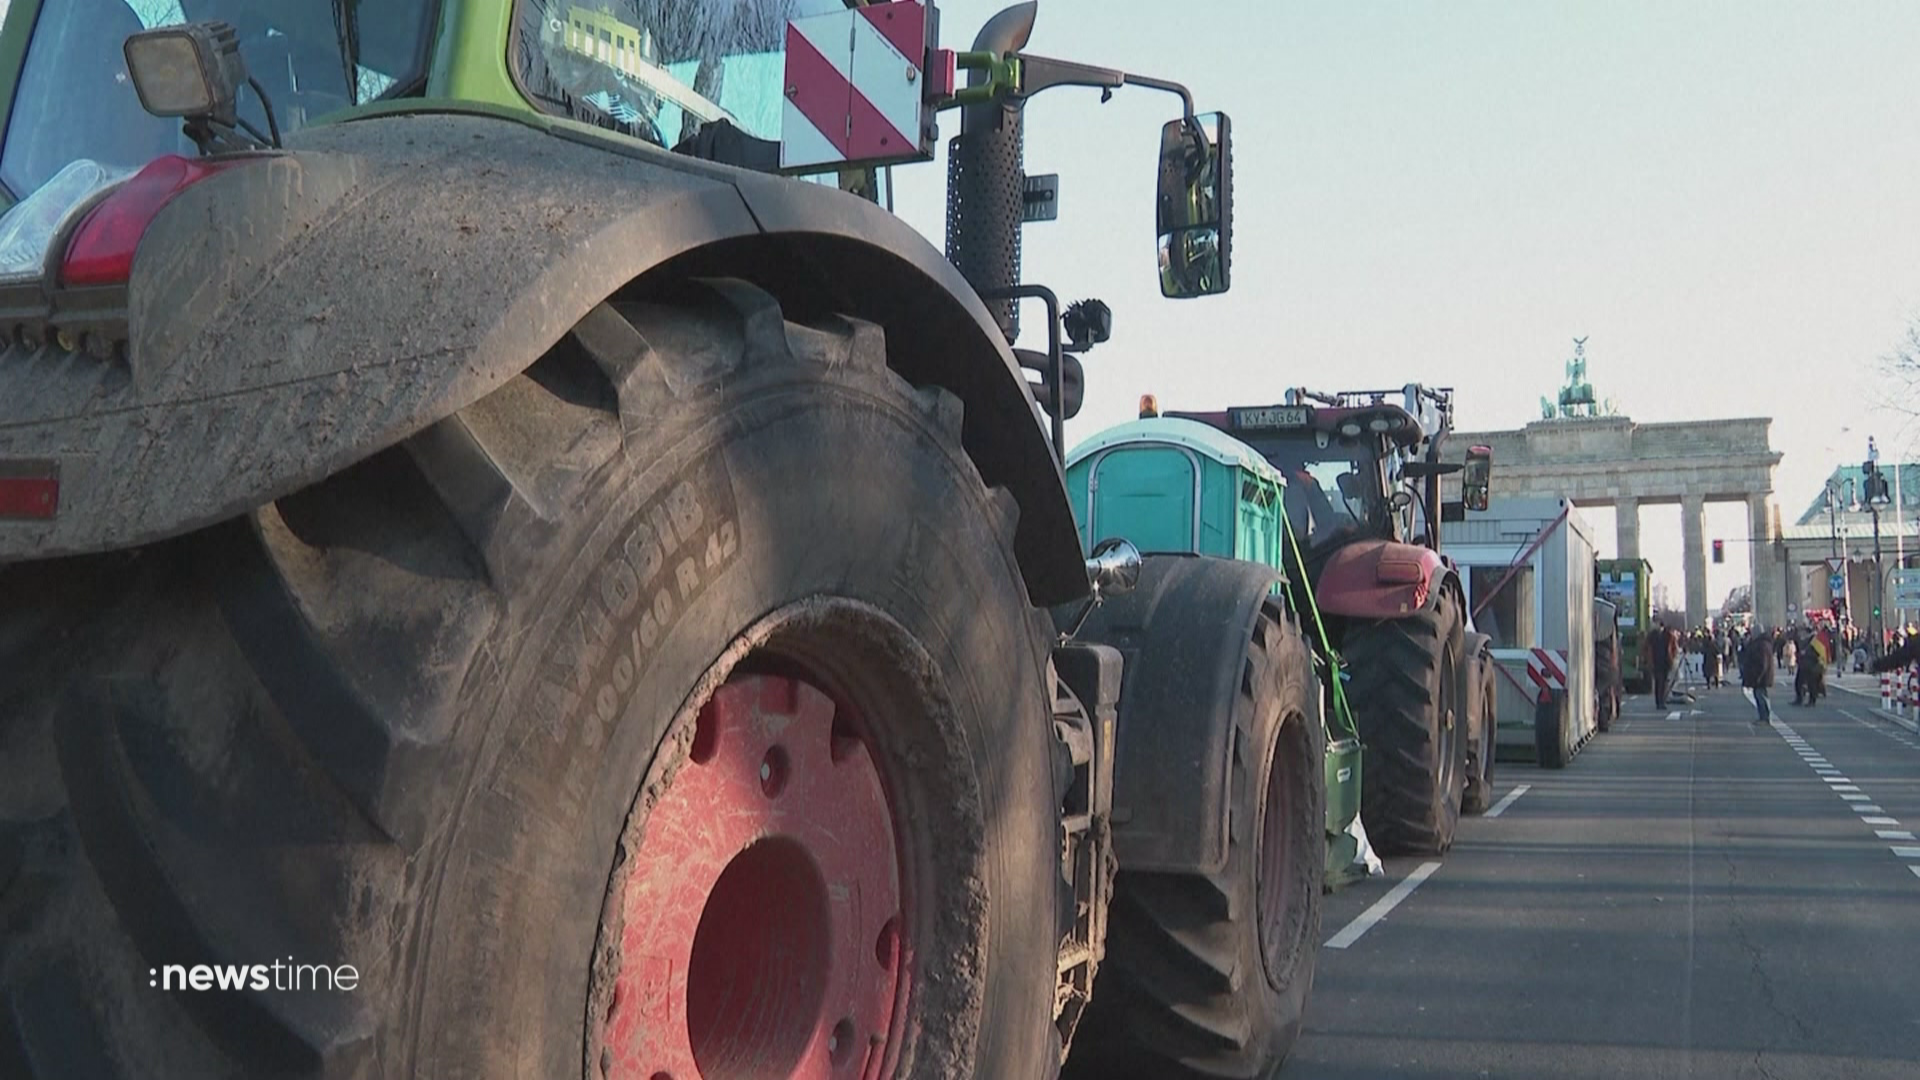 Angebot für Protest-Bauern: FDP stellt Landwirten Bürokratie-Abbau in Aussicht